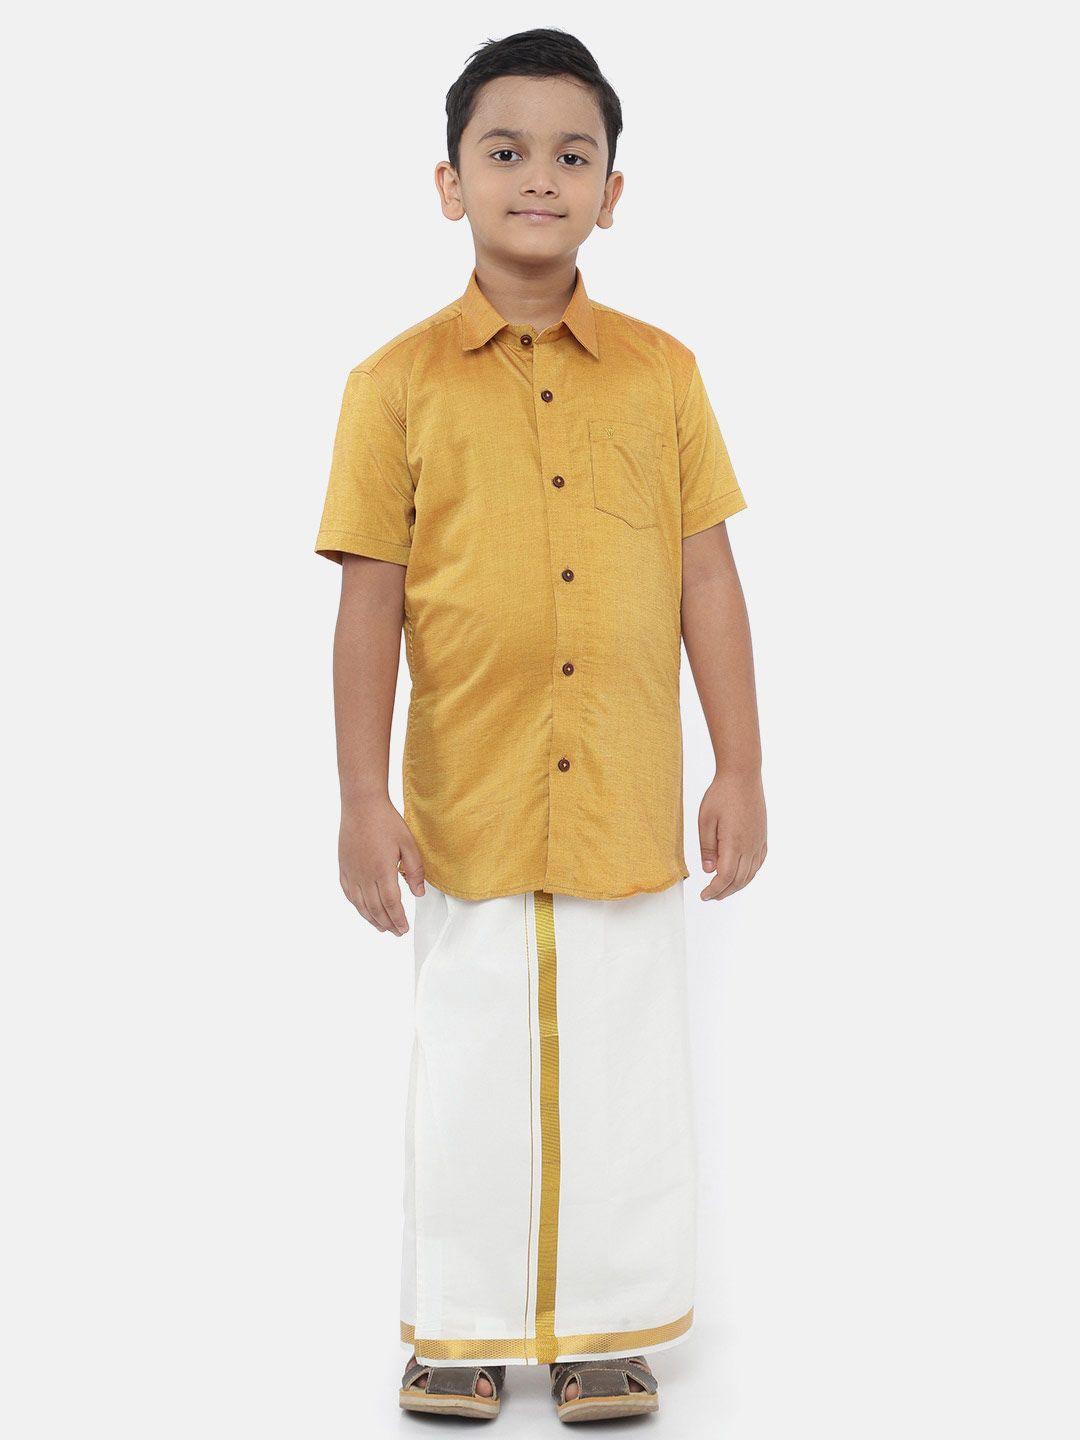 Ramraj Boys Gold-Toned & White Clothing Set